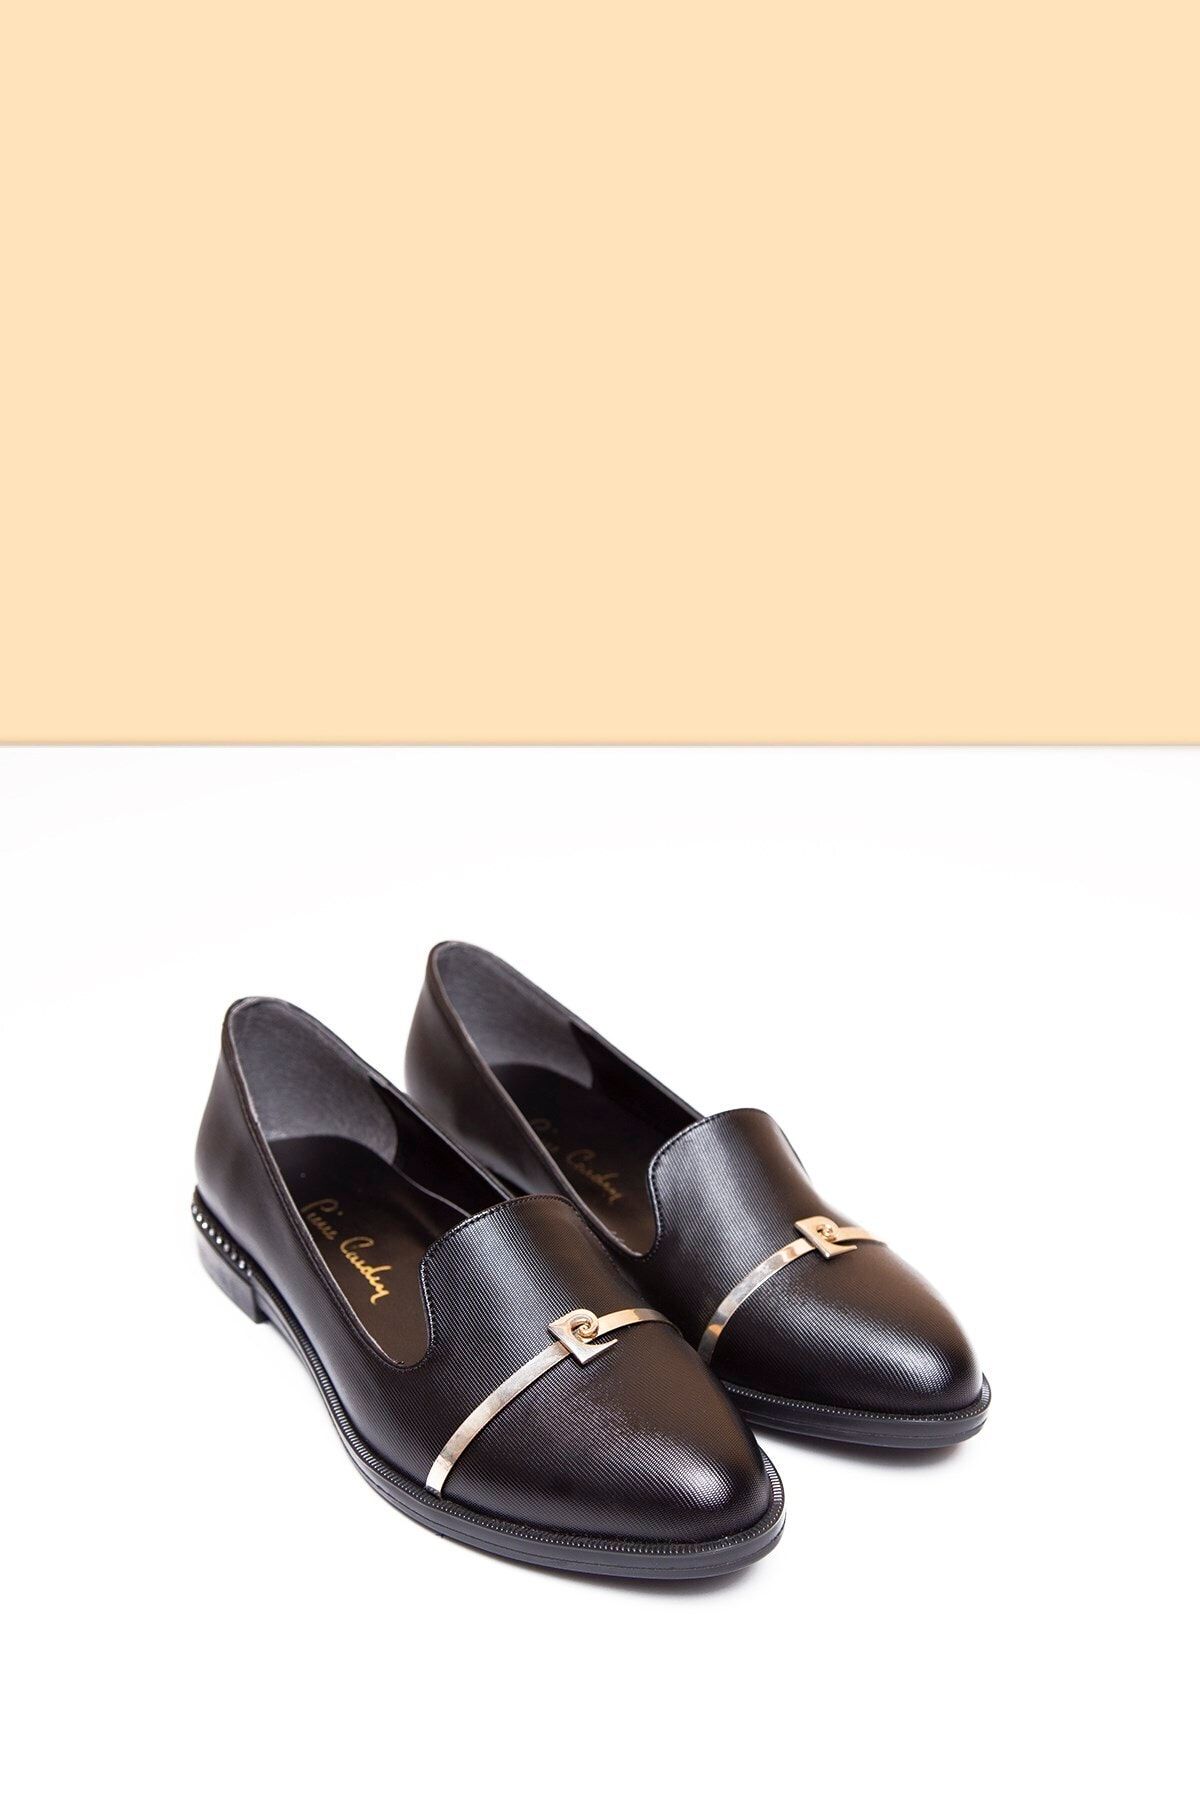 Pierre Cardin PC-50599 Parlak Siyah Kadın Ayakkabı